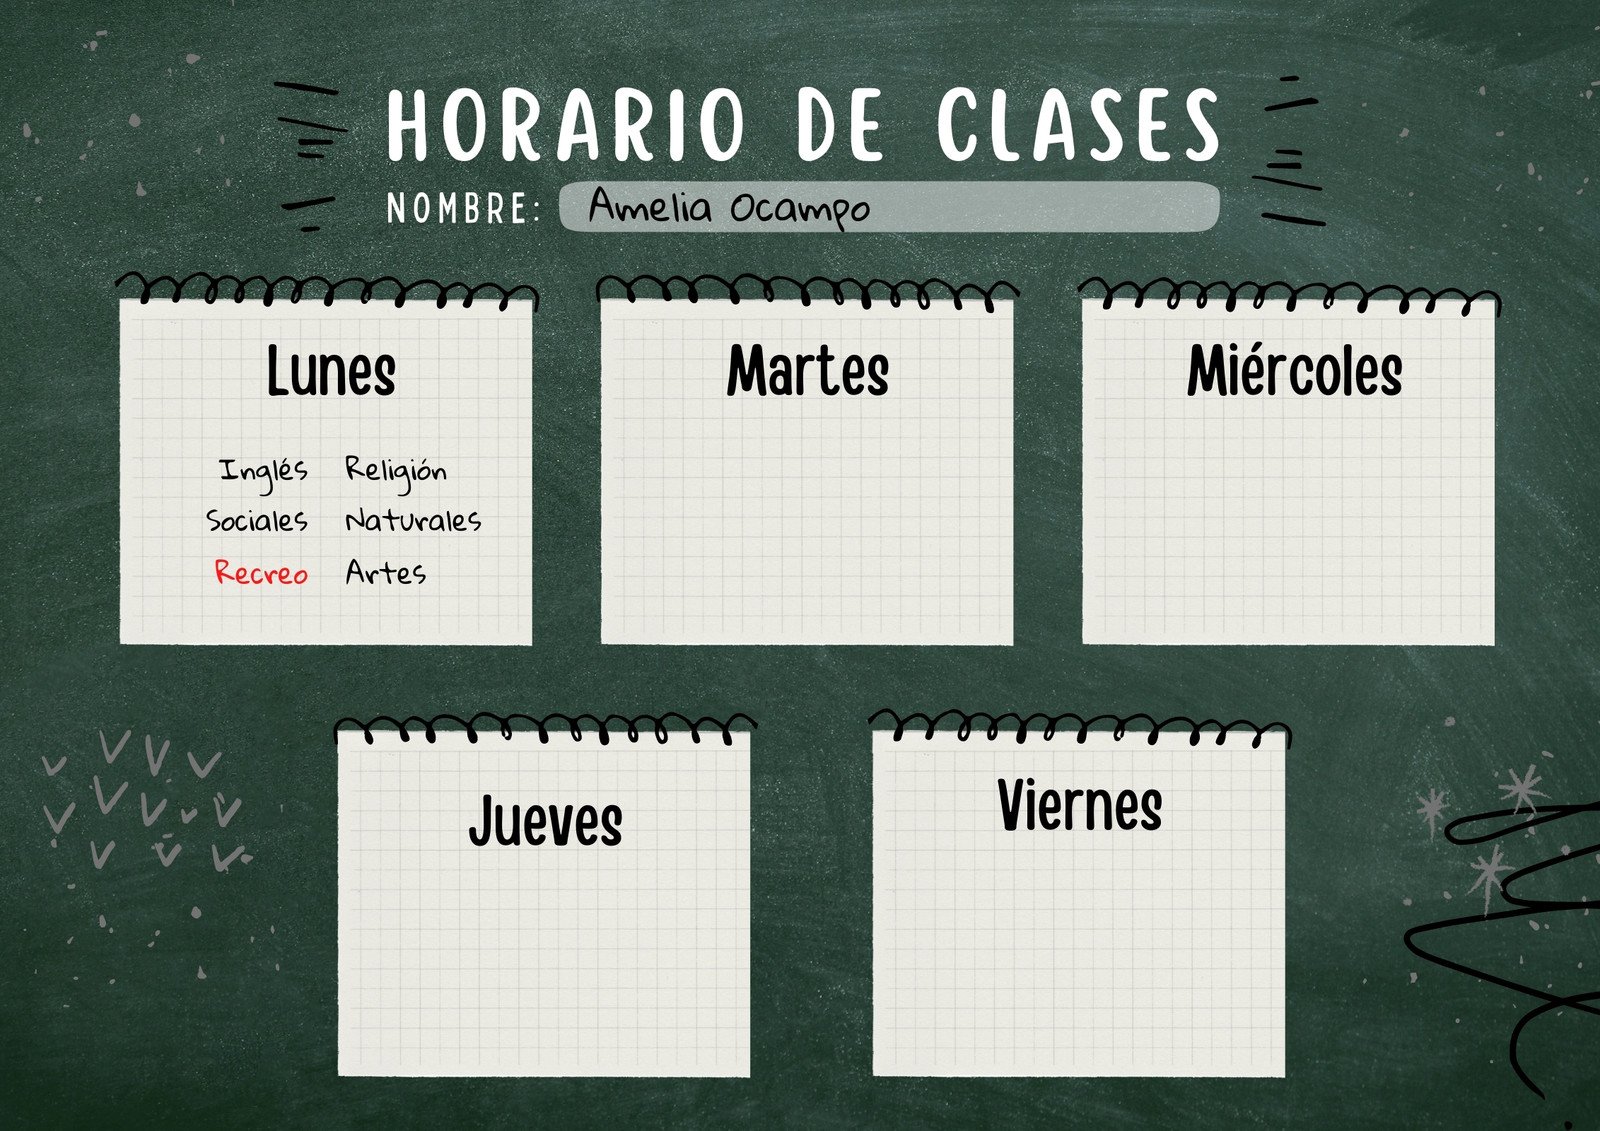 Web Para Hacer Horarios Plantillas para crear tu horario de clases gratis | Canva